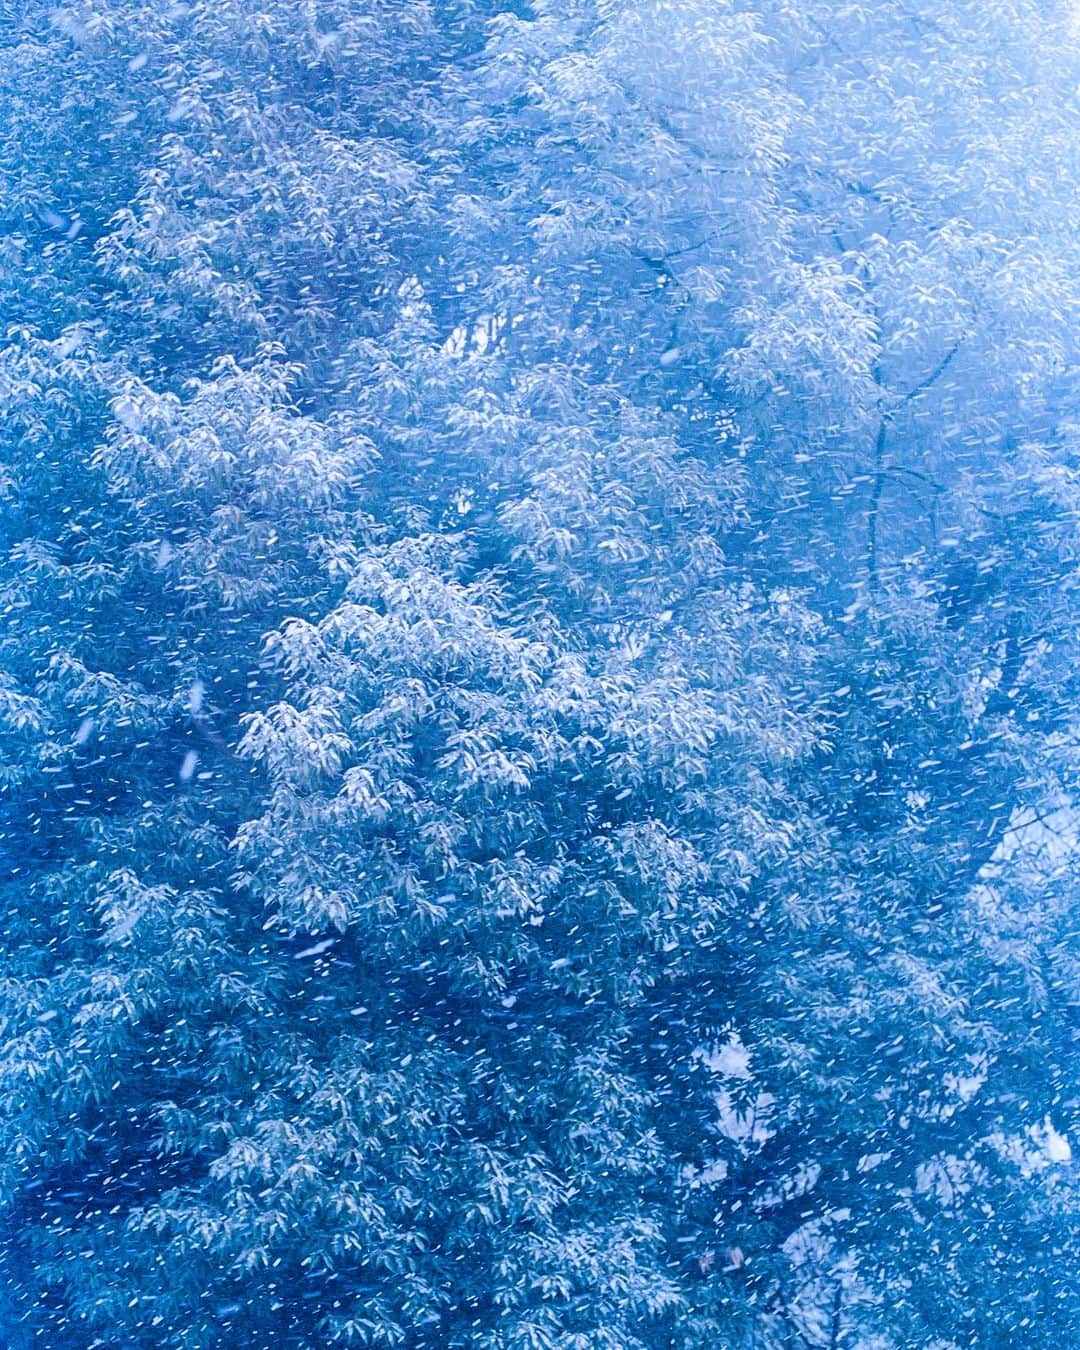 黒河内真衣子のインスタグラム：「Mame Kurogouchi はブランド初のフレグランスコレクション「LICHEN × Mame Kurogouchi」を明日、10/5より発売いたします。  原風景である、冬の記憶の景色。暖かな室内から銀世界をぼうっと眺めている時間の"目は冷たいのに体は暖かい"という感覚を香りへと託すため、記憶の景色、生暖かな体温、朧げな色彩を @izumi_kan が設計してくださいました。@teruhiroyanagihara と共に長野へと足を運び、一緒に雪景色を眺めながら、長い旅路を経てようやく皆様へお届けできることとなりました。  天然香料を用いたオードパルファムは  @lichen.fr LICHENのオークモスを主体とした土の香りをベースに、秋の七草である藤袴、白檀、沈香などの香木とスミレなどをブレンドしています。 自然のものから作っているので、同じ香りですがきっとその年ごとの香りになるのかなぁと、それも楽しみにしています。初回分は私も一緒に収穫を手伝いました。とても大切な思い出です。 そして、もともとアルコールの香りが苦手だったので、天然香料と合わせたのは、優しいお米由来のアルコール*にしました。 御神酒の様な、すーんと清らかなお米の香りは、どこか冬の静寂な雪景色を彷彿とさせました。 それらが一緒になって、土や、草花が春を待ち侘びて、冷たい雪の下で眠っているのを想わせるような香りです。  もう一つのプロダクト、ソイワックスを使ったキャンドルは、樹木の香りのはじめ、ミント、ローズマリーなどの精油が冷たい雪景色を、ソイワックスが作り出す穏やかな炎が、室内で暖炉の火がゆらめいている、穏やかな暖かさを伝えてくれています。 同じ景色を香りで求めて、プロダクトごとに描かれているのが特徴です。  私は普段から香水はつけかえることはなく、ずっと同じ香りを纏うことを好んでいます。 何かがない限り、ずっと同じものが好きです。 ですので、これが今のMame Kurogouchi の香りになる様、長く愛せるように作ったつもりです。  これからやってくる肌寒い季節を前に、誰かの景色となります様に。 　 どうぞ宜しくお願い致します。  販売店　 Mame Kurogouchi Aoyama 10/5(木)より発売開始 Mame Kurogouchi Online 10/5(木)より発売開始 Vague Kobe 10/8(日)より発売開始  Campaign @yuichironoda   #lichenmamekurogouchi  (※成分のアルコールは香水の原料を目的として使用しています)」